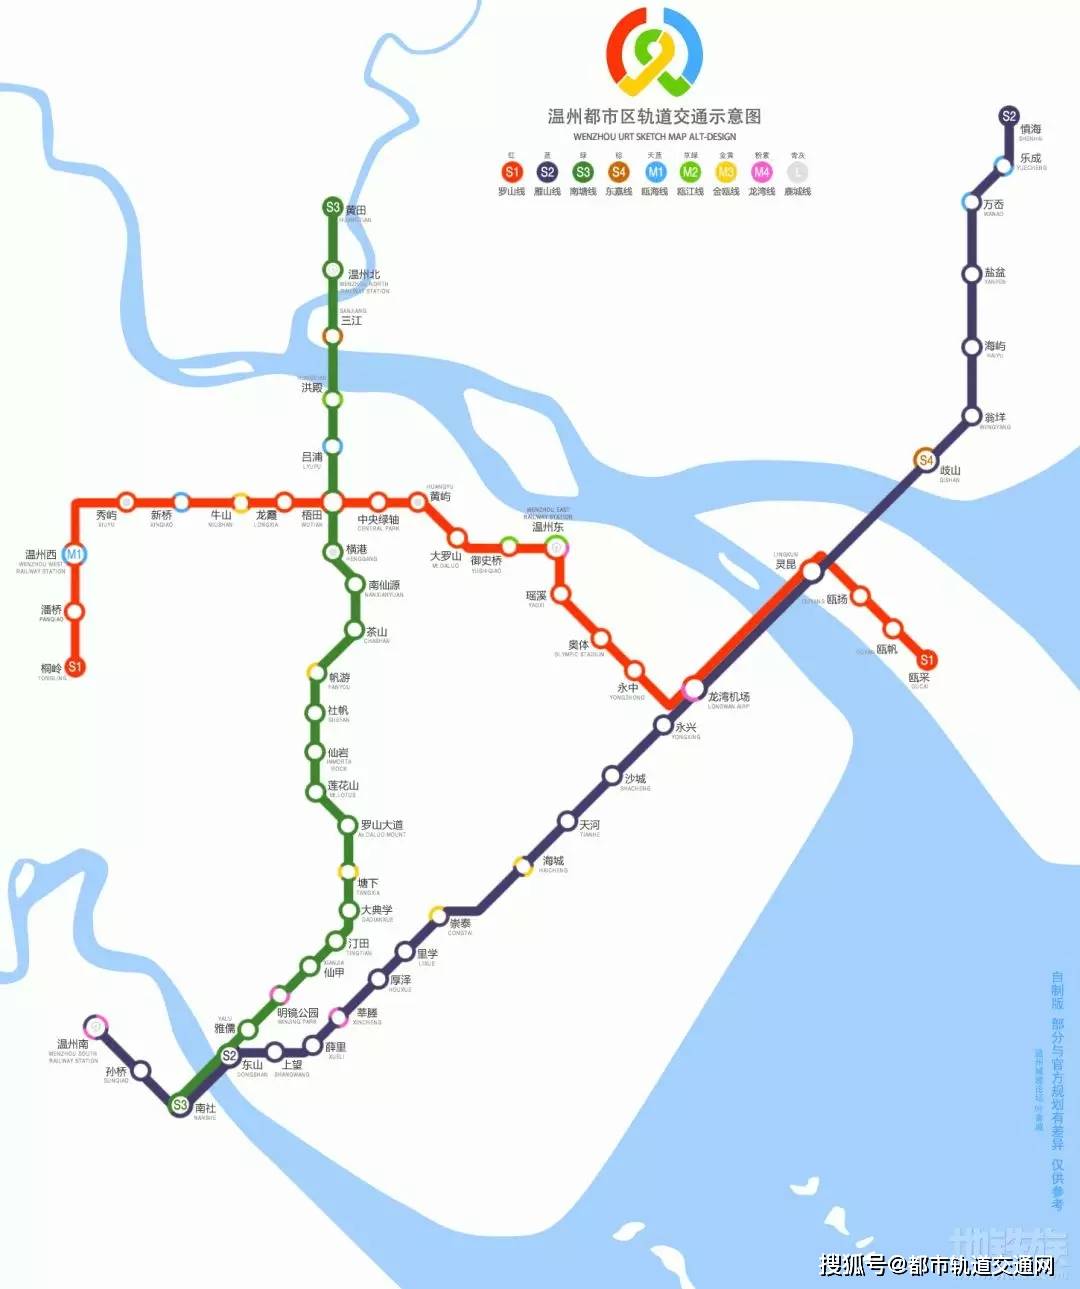 温州轨道交通:s1线开通运营,s2线,s3线在建,拟建线路7